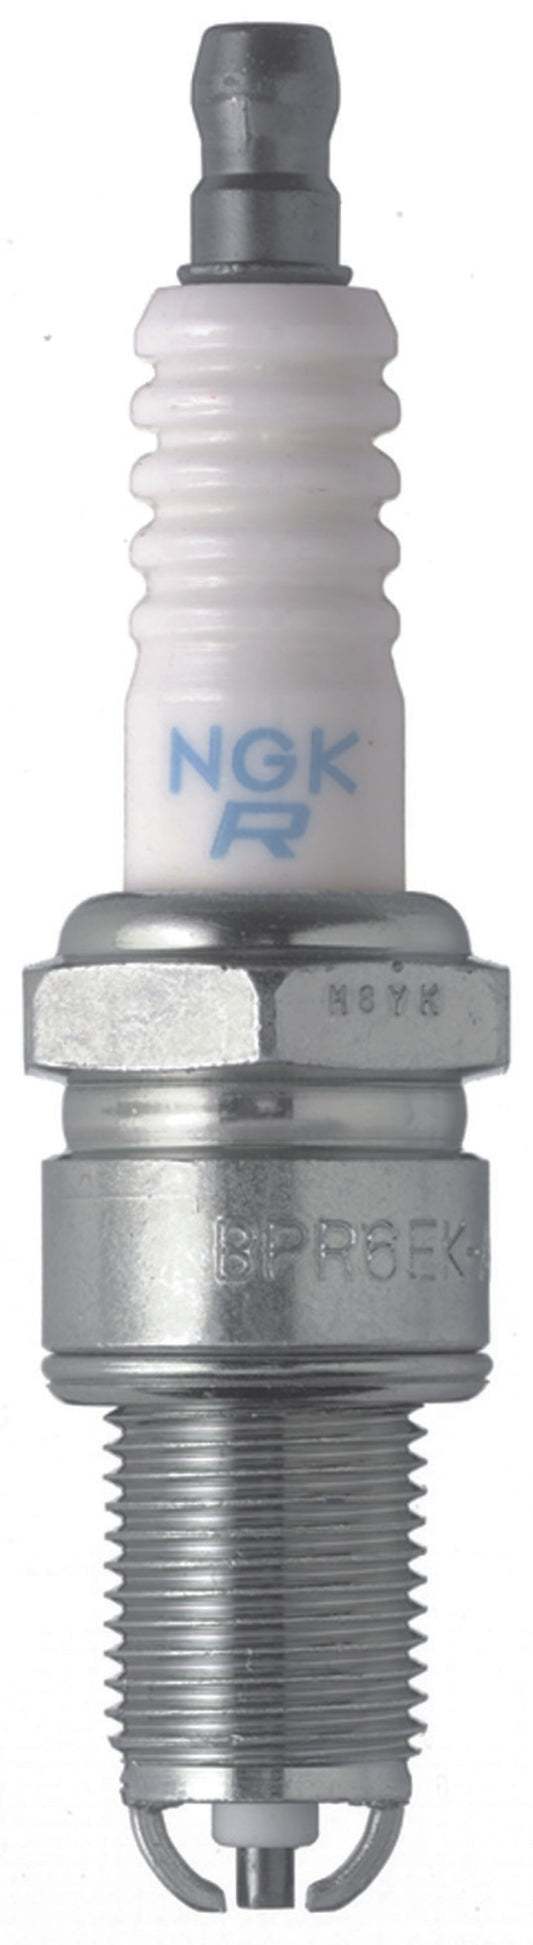 NGK Standard Spark Plug Box of 4 (BPR6EKN)